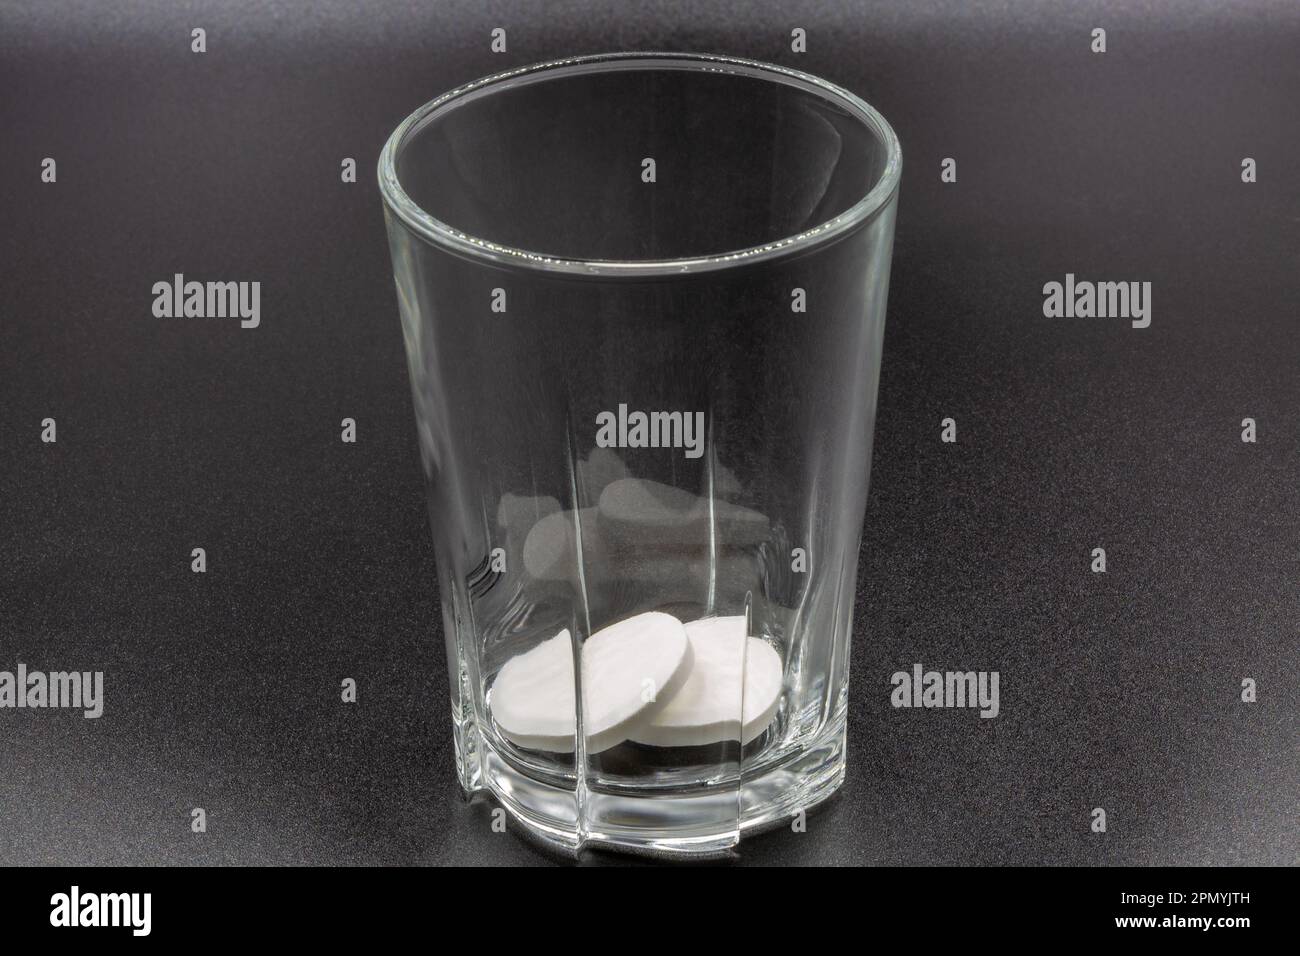 Auflösen von Brausetabletten in einer Glasnaht auf schwarzer Farbe. Bereit zur Auflösung und Zubereitung eines Getränks. Stockfoto